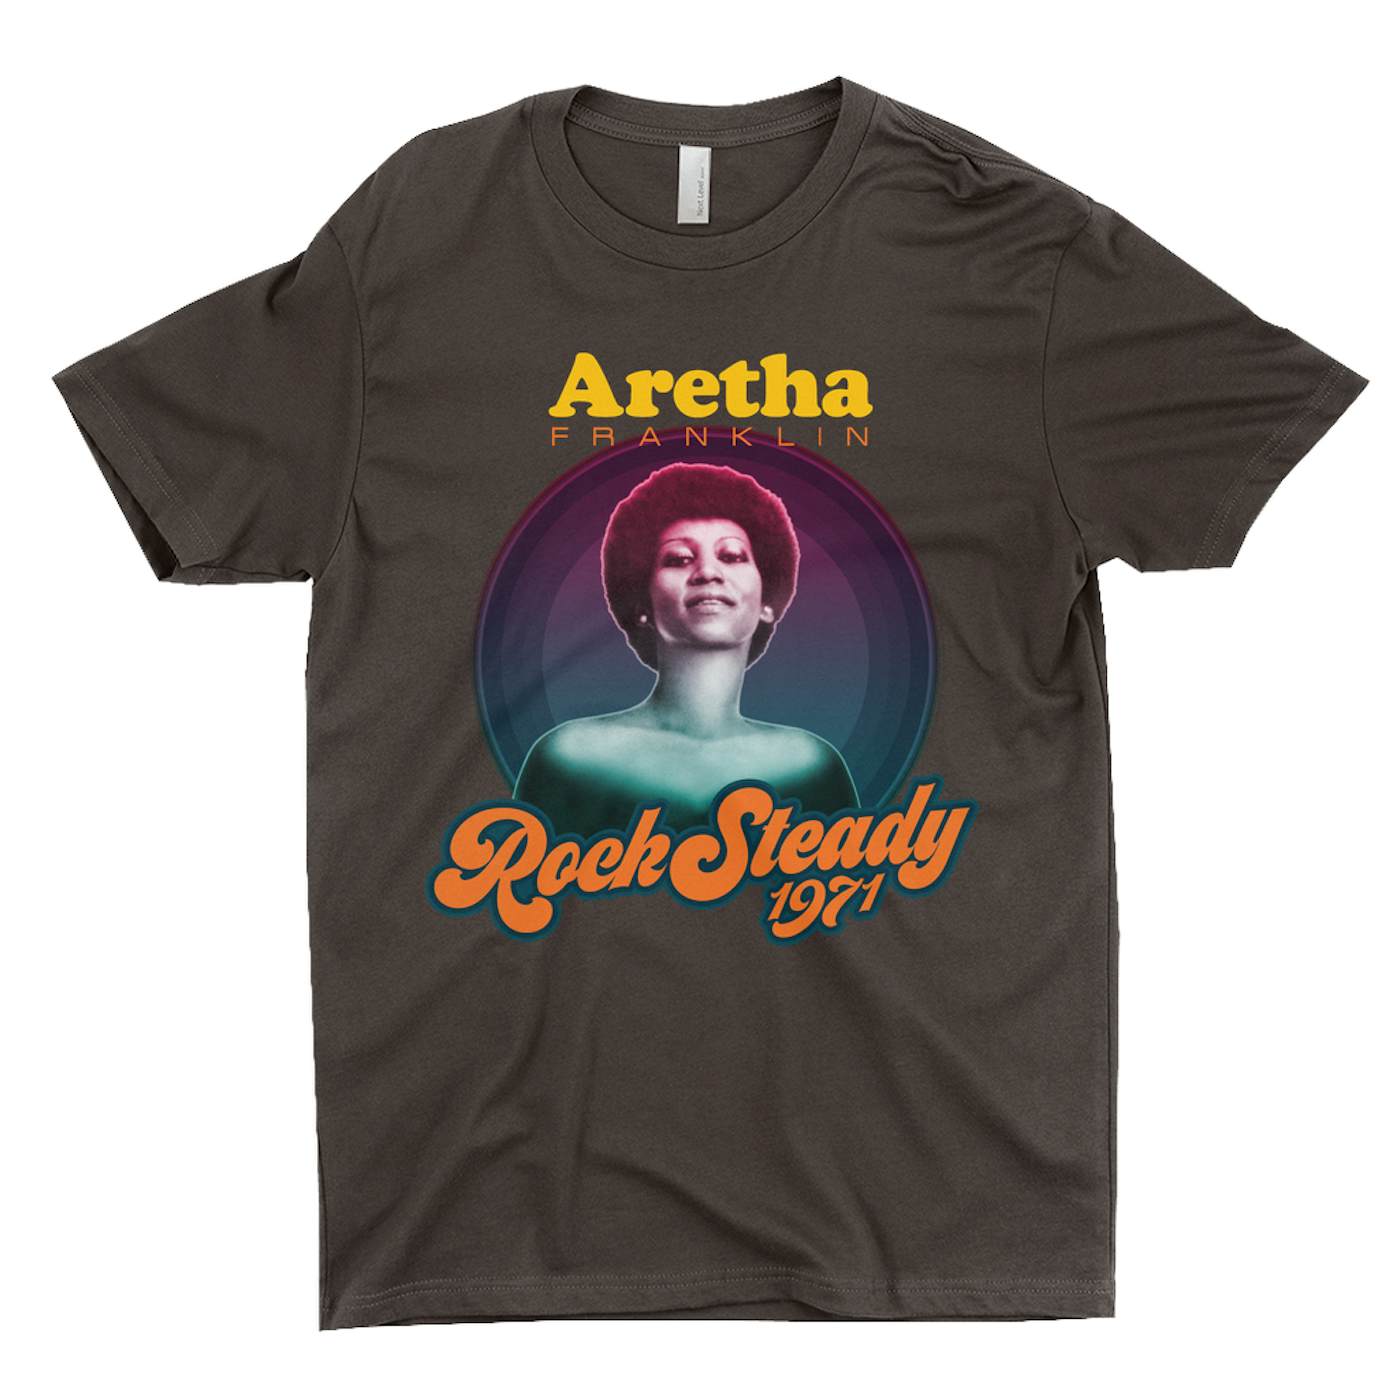 Aretha Franklin T-Shirt | Rock Steady 1971 Aretha Franklin Shirt